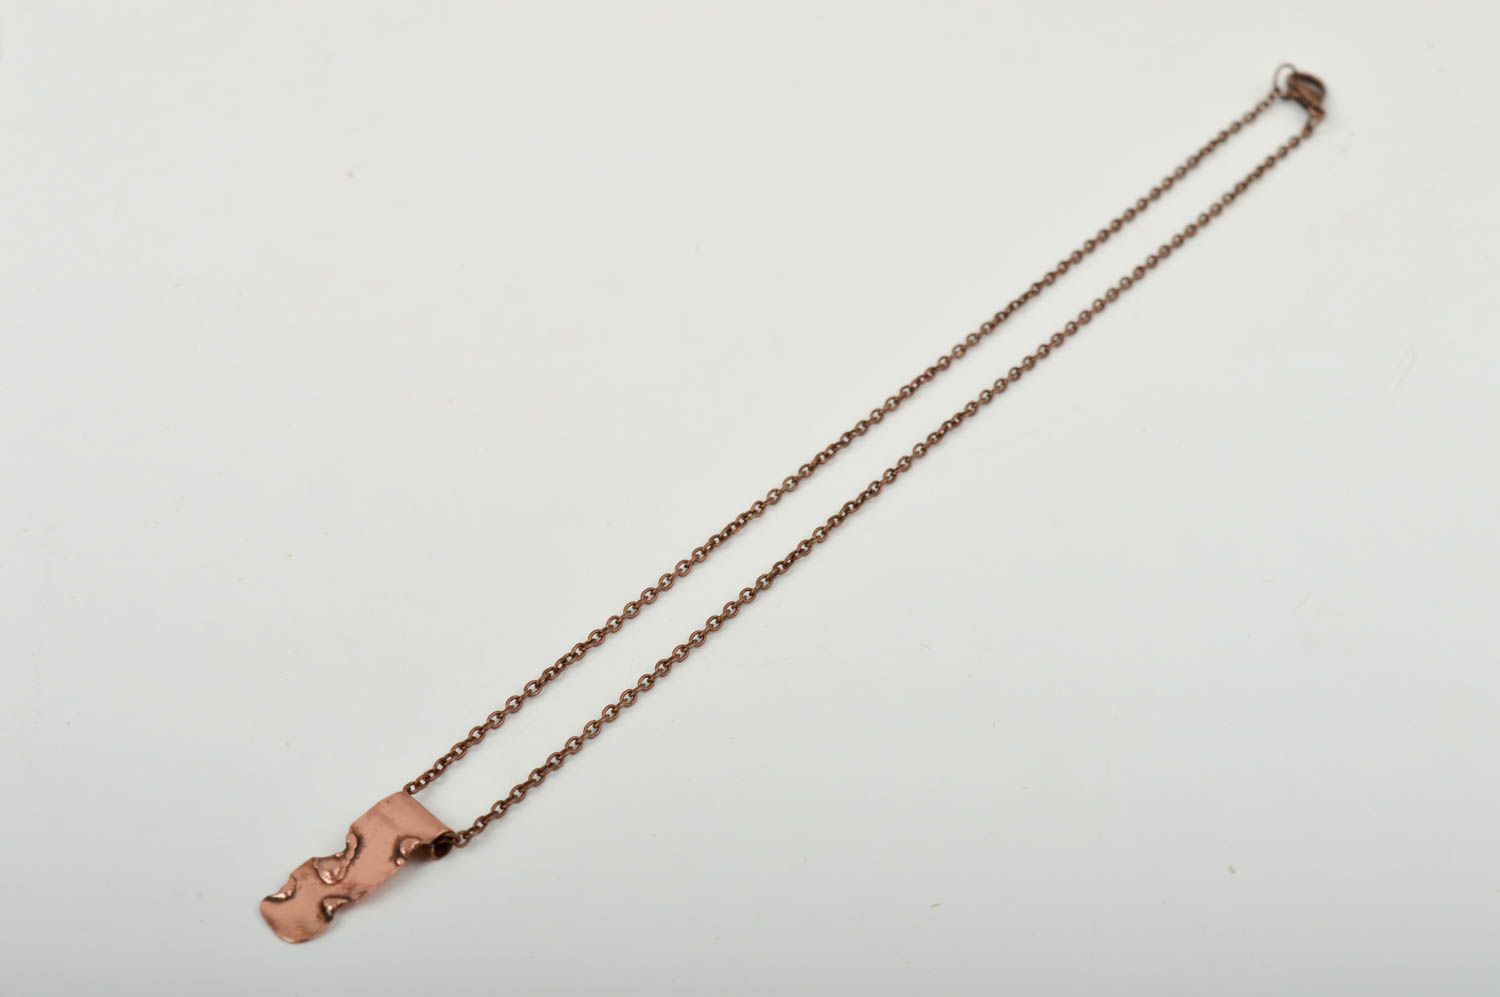 Stylish handmade metal pendant beautiful jewellery fashion trends small gifts photo 3